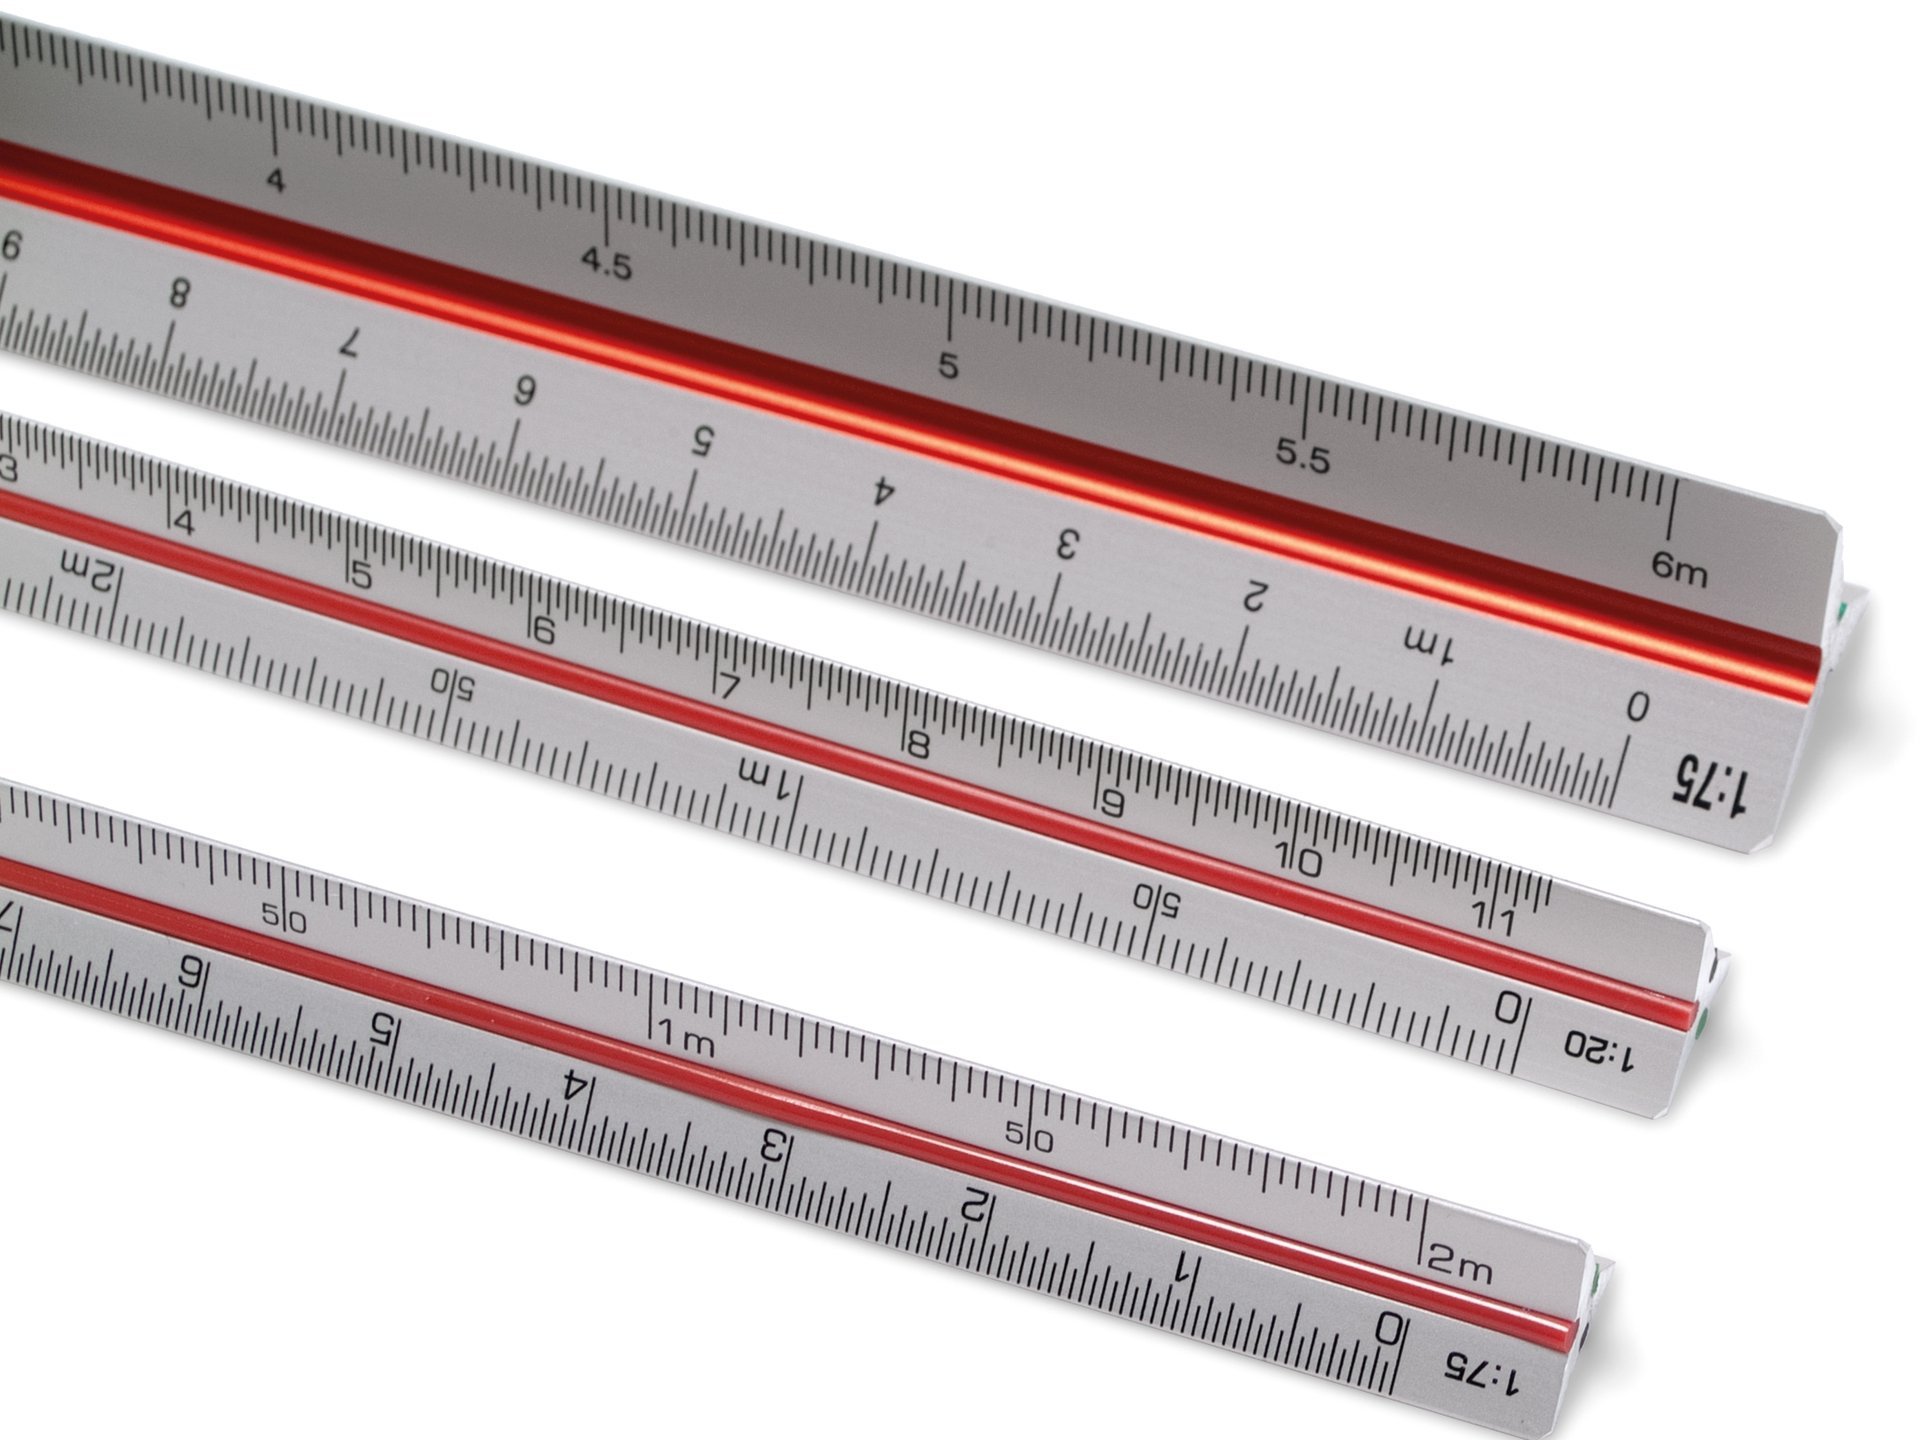 scale rulers